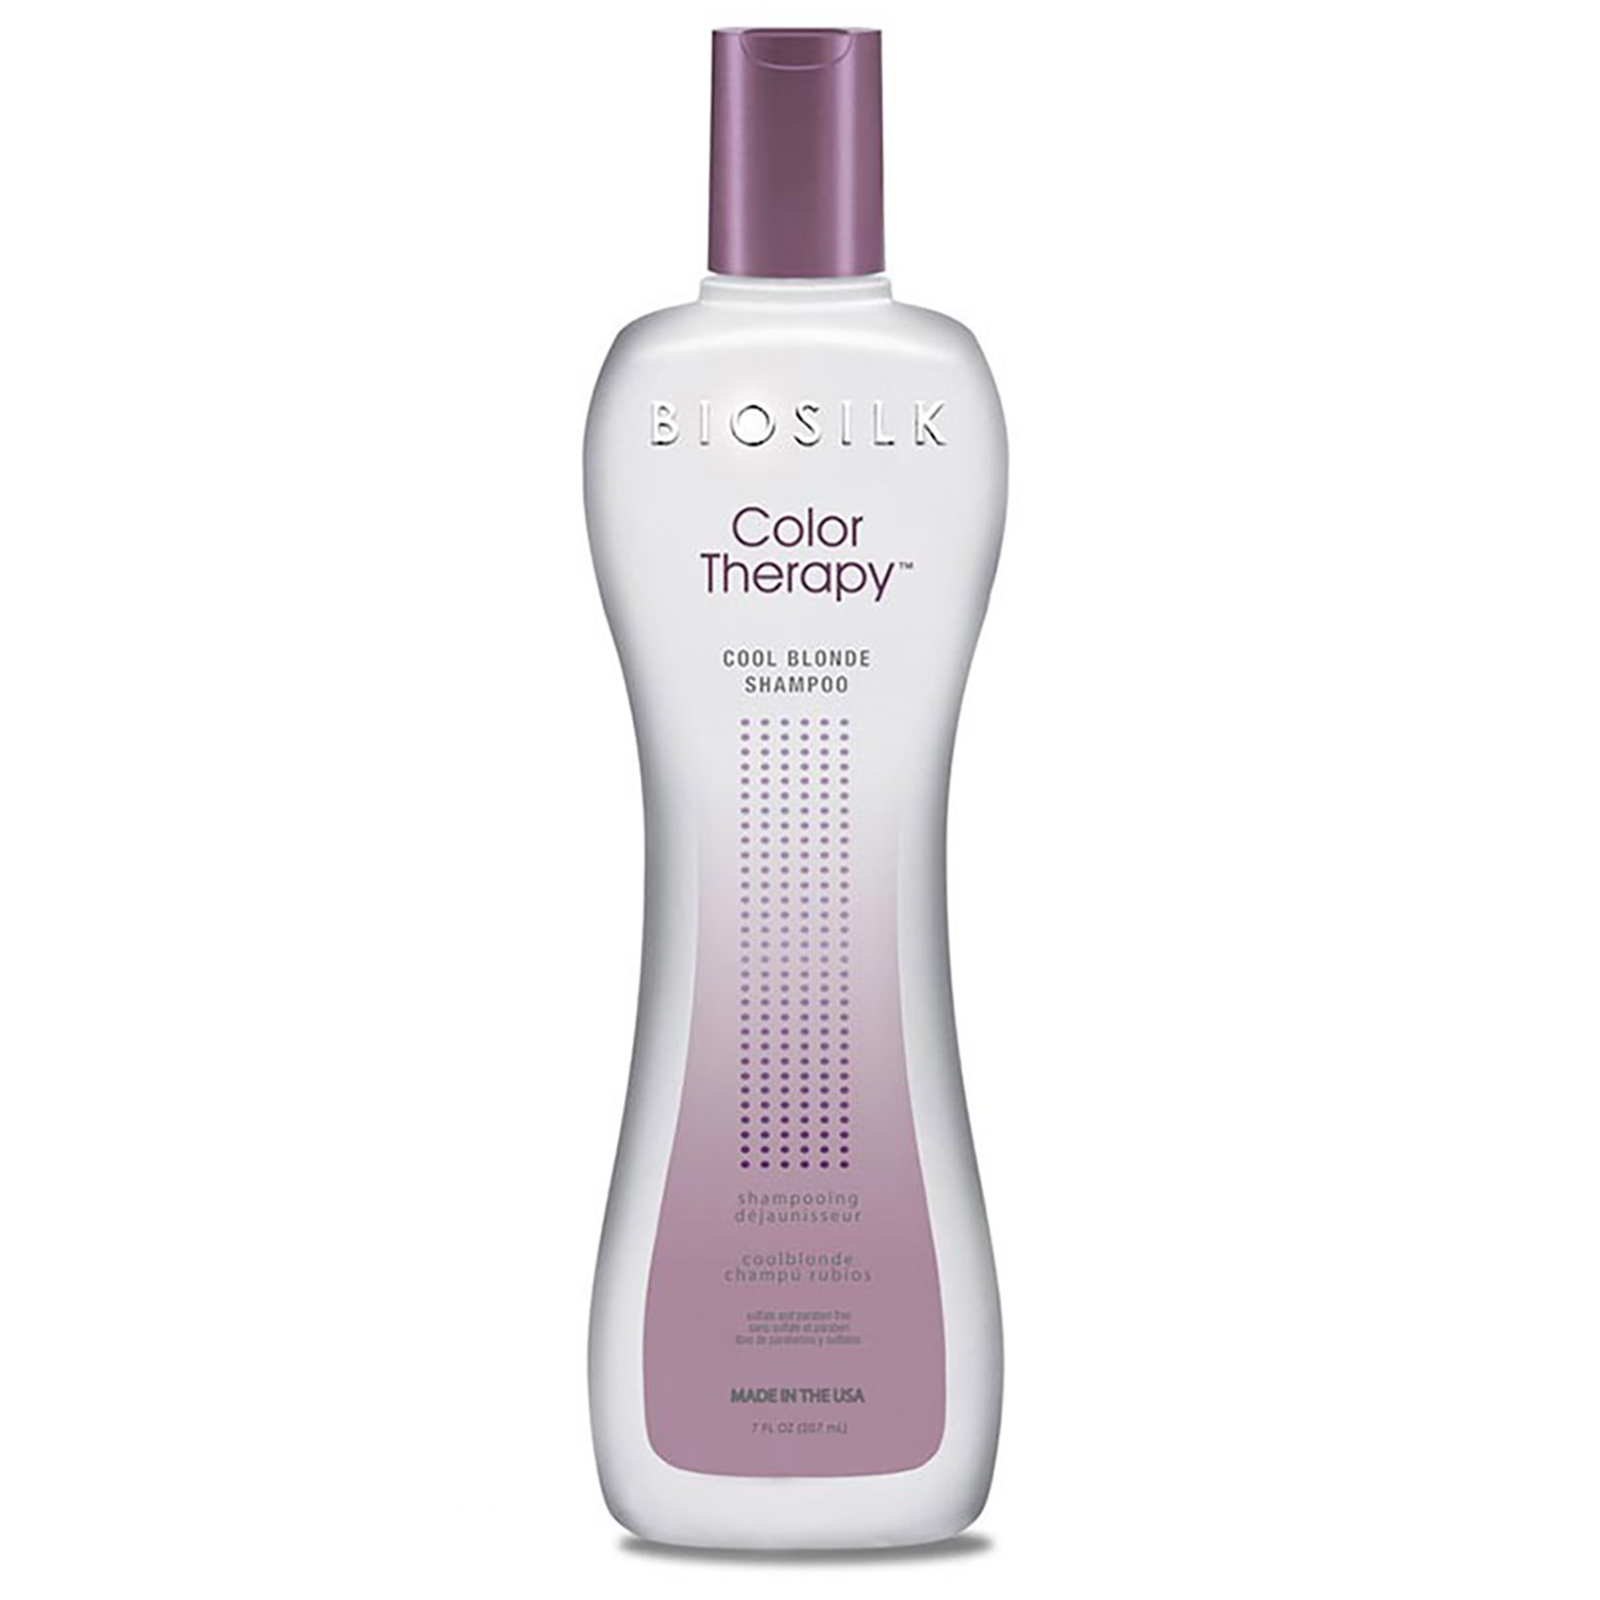 Biosilk - Color Therapy - Cool Blonde Shampoo - 355 ml